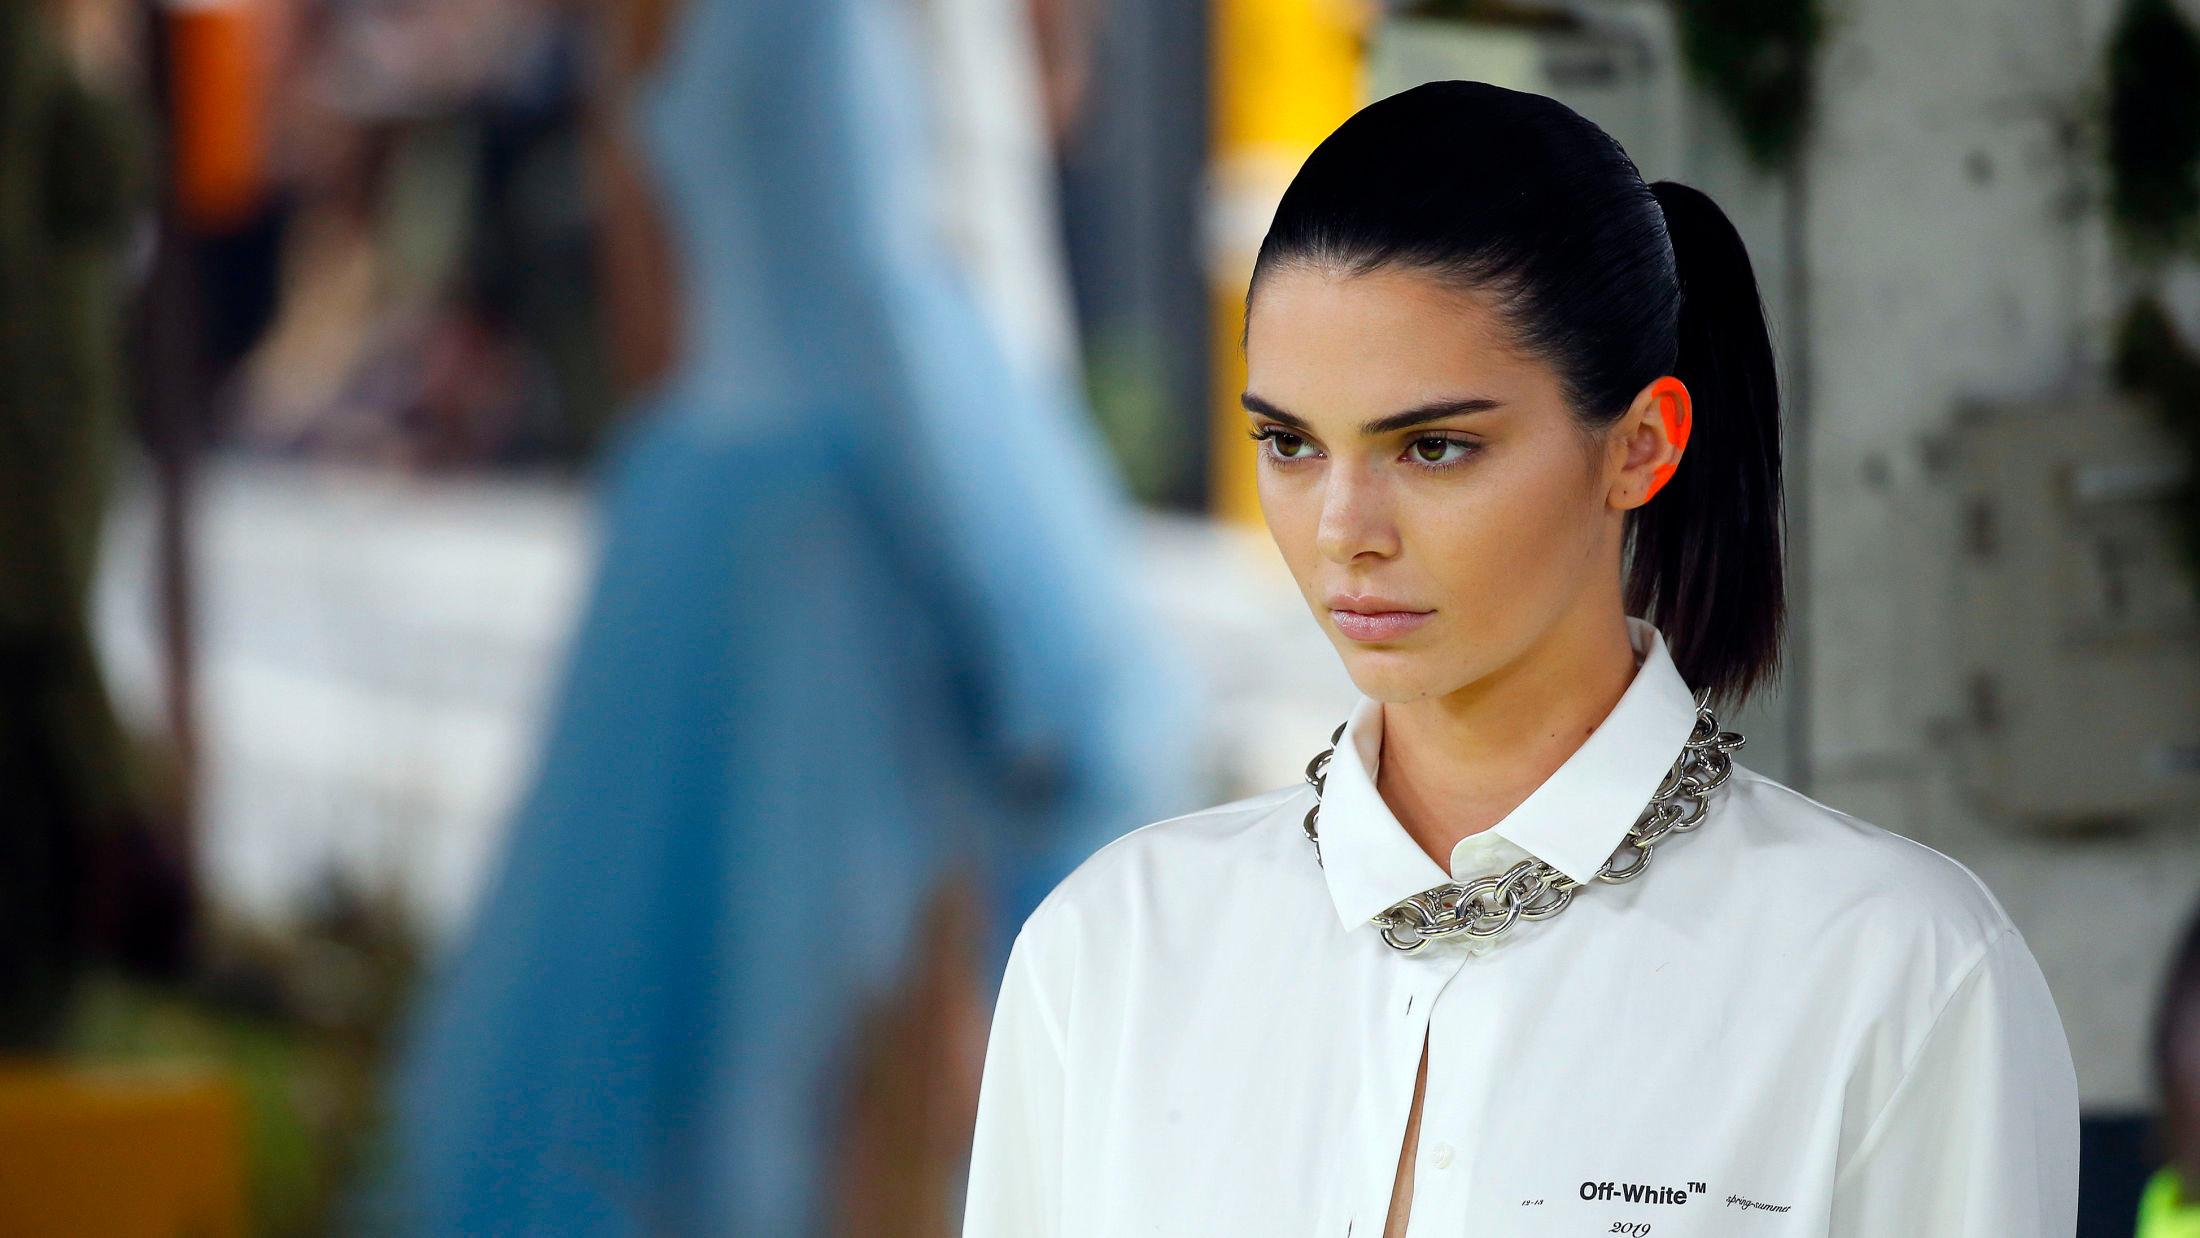 SUPERMODELL: Kendall Jenner gikk ikke på mange visninger under Paris Fashion Week, men Off-White kunne hun ikke holde seg unna. Foto: Getty Images